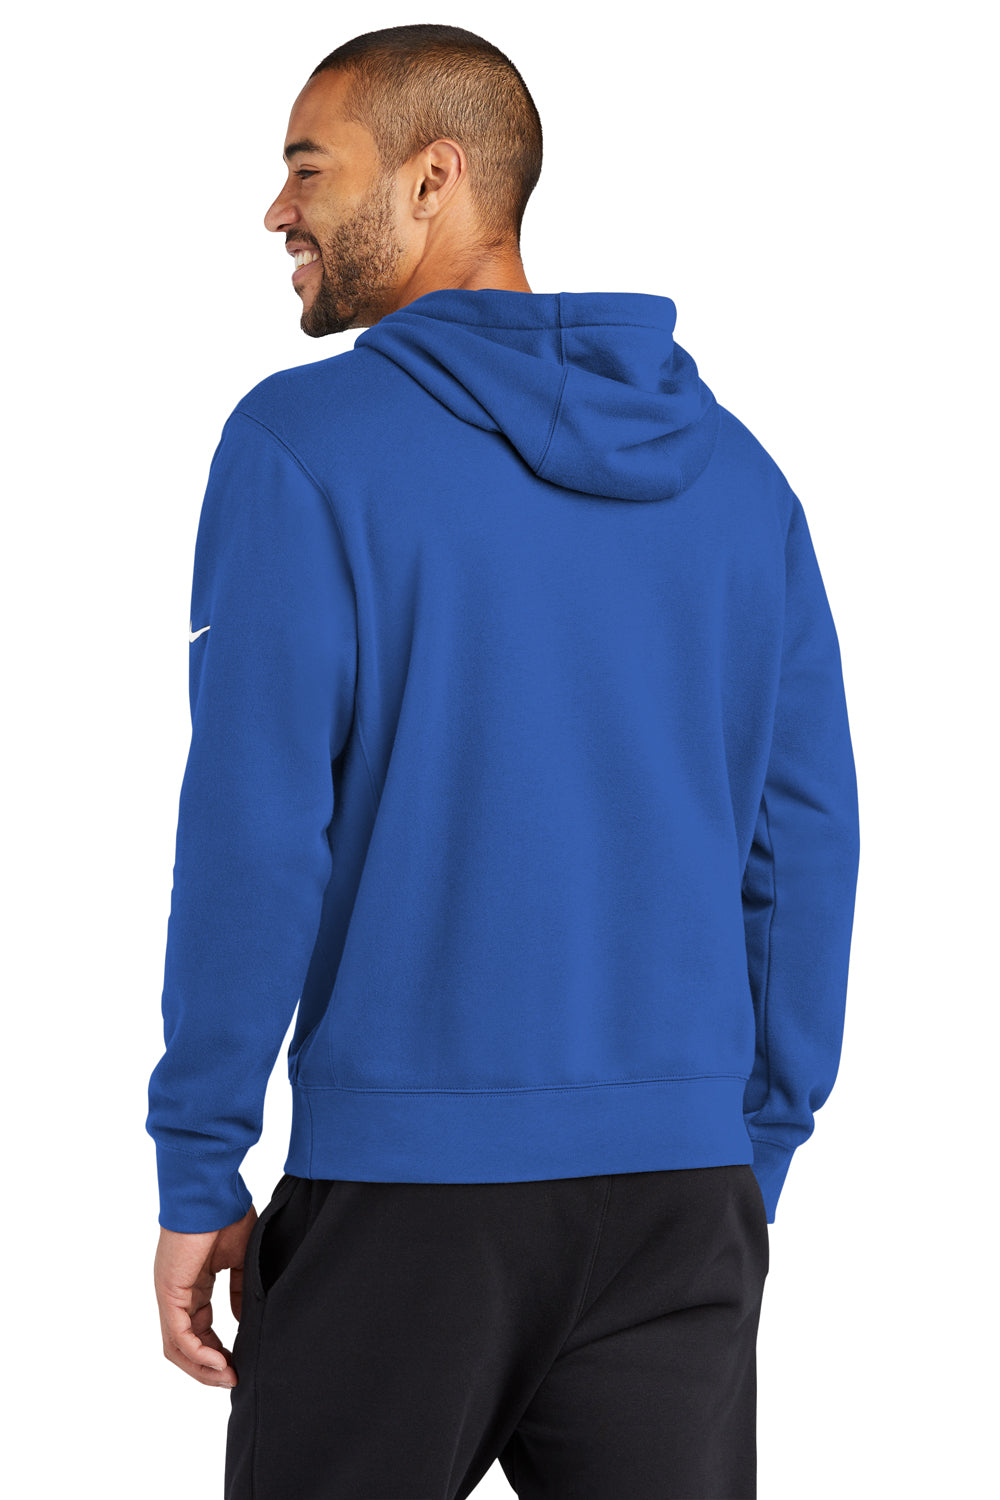 Nike NKDR1499 Mens Club Fleece Hooded Sweatshirt Hoodie Game Royal Blue Model Back